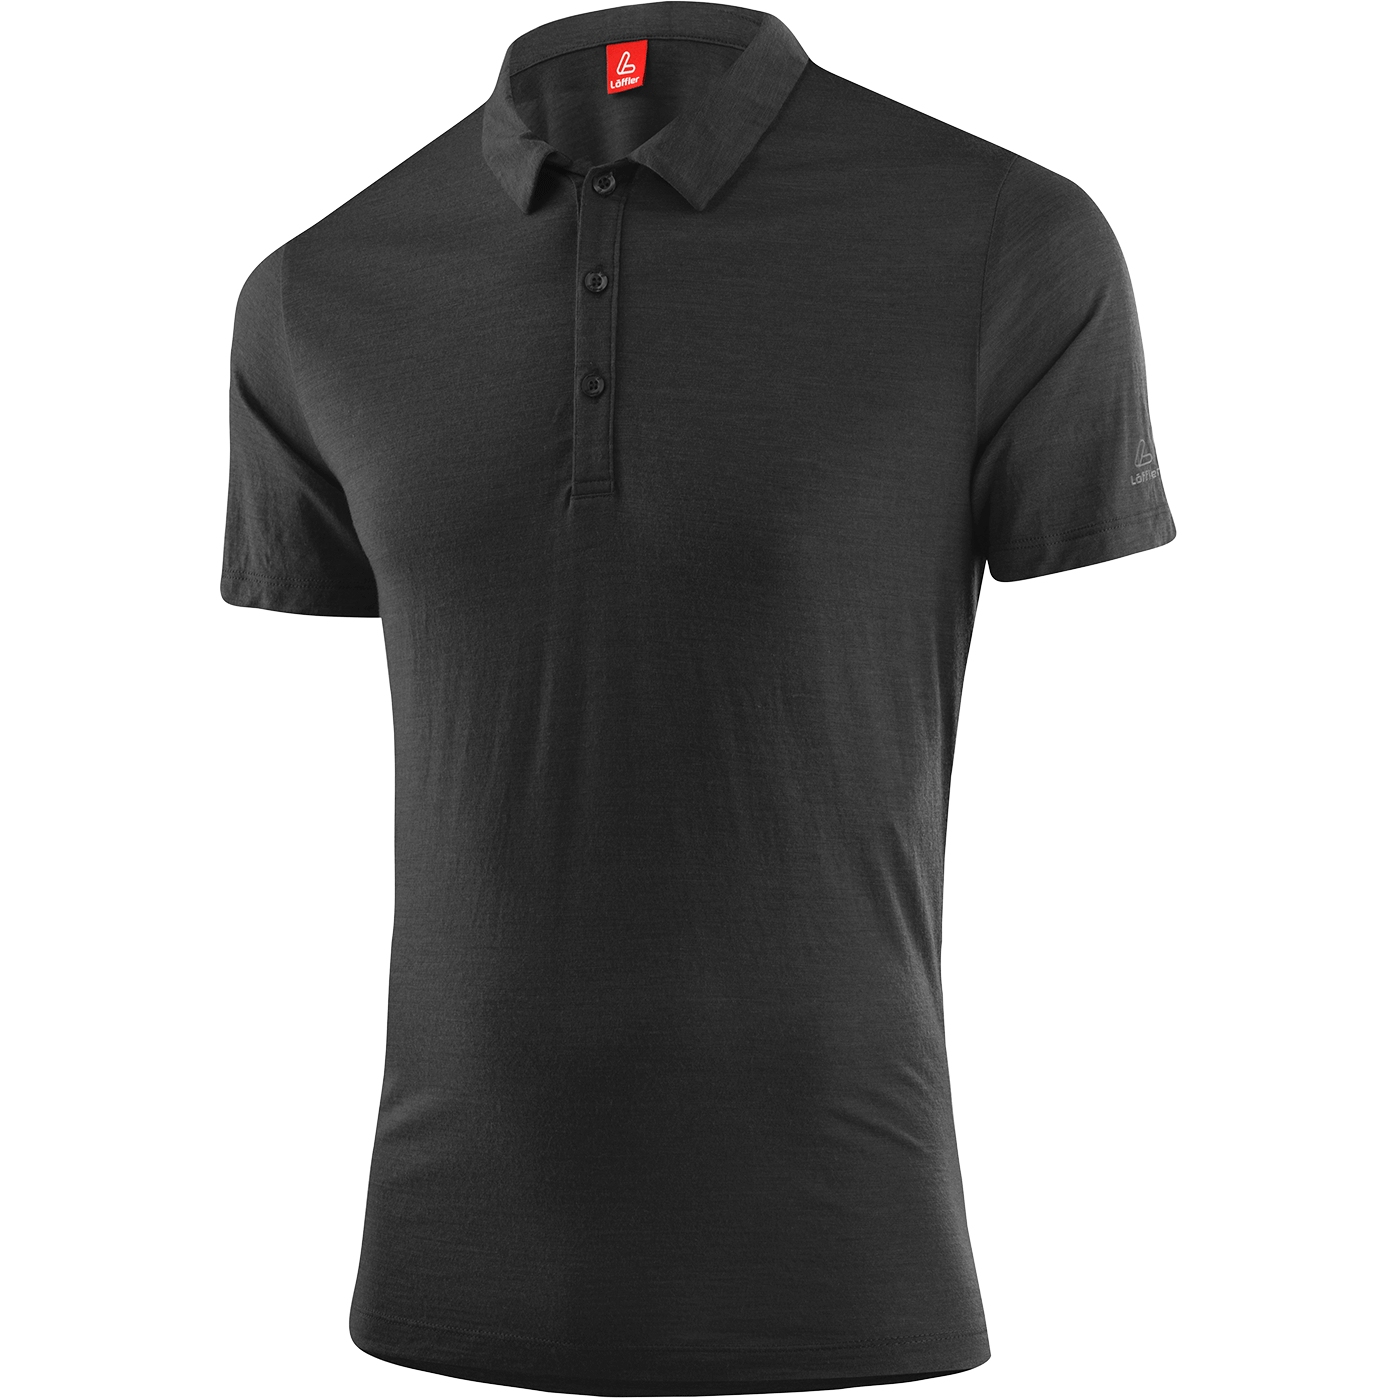 Produktbild von Löffler Merino-Tencel™ Poloshirt Herren - schwarz 990